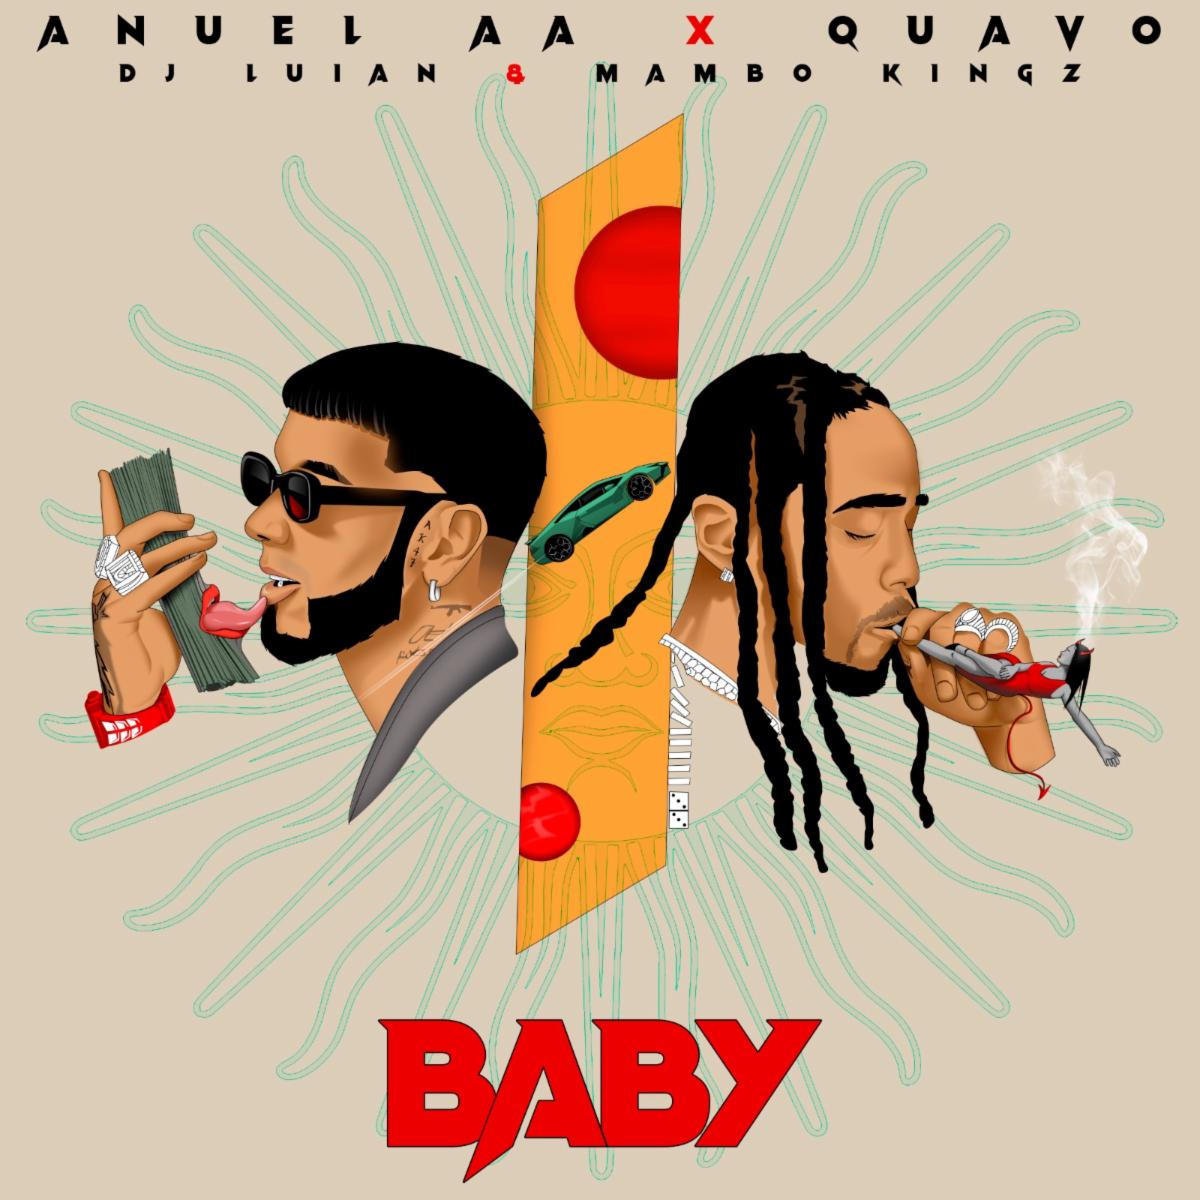 ANUEL AA se une a Quavo en nuevo sencillo “Baby”